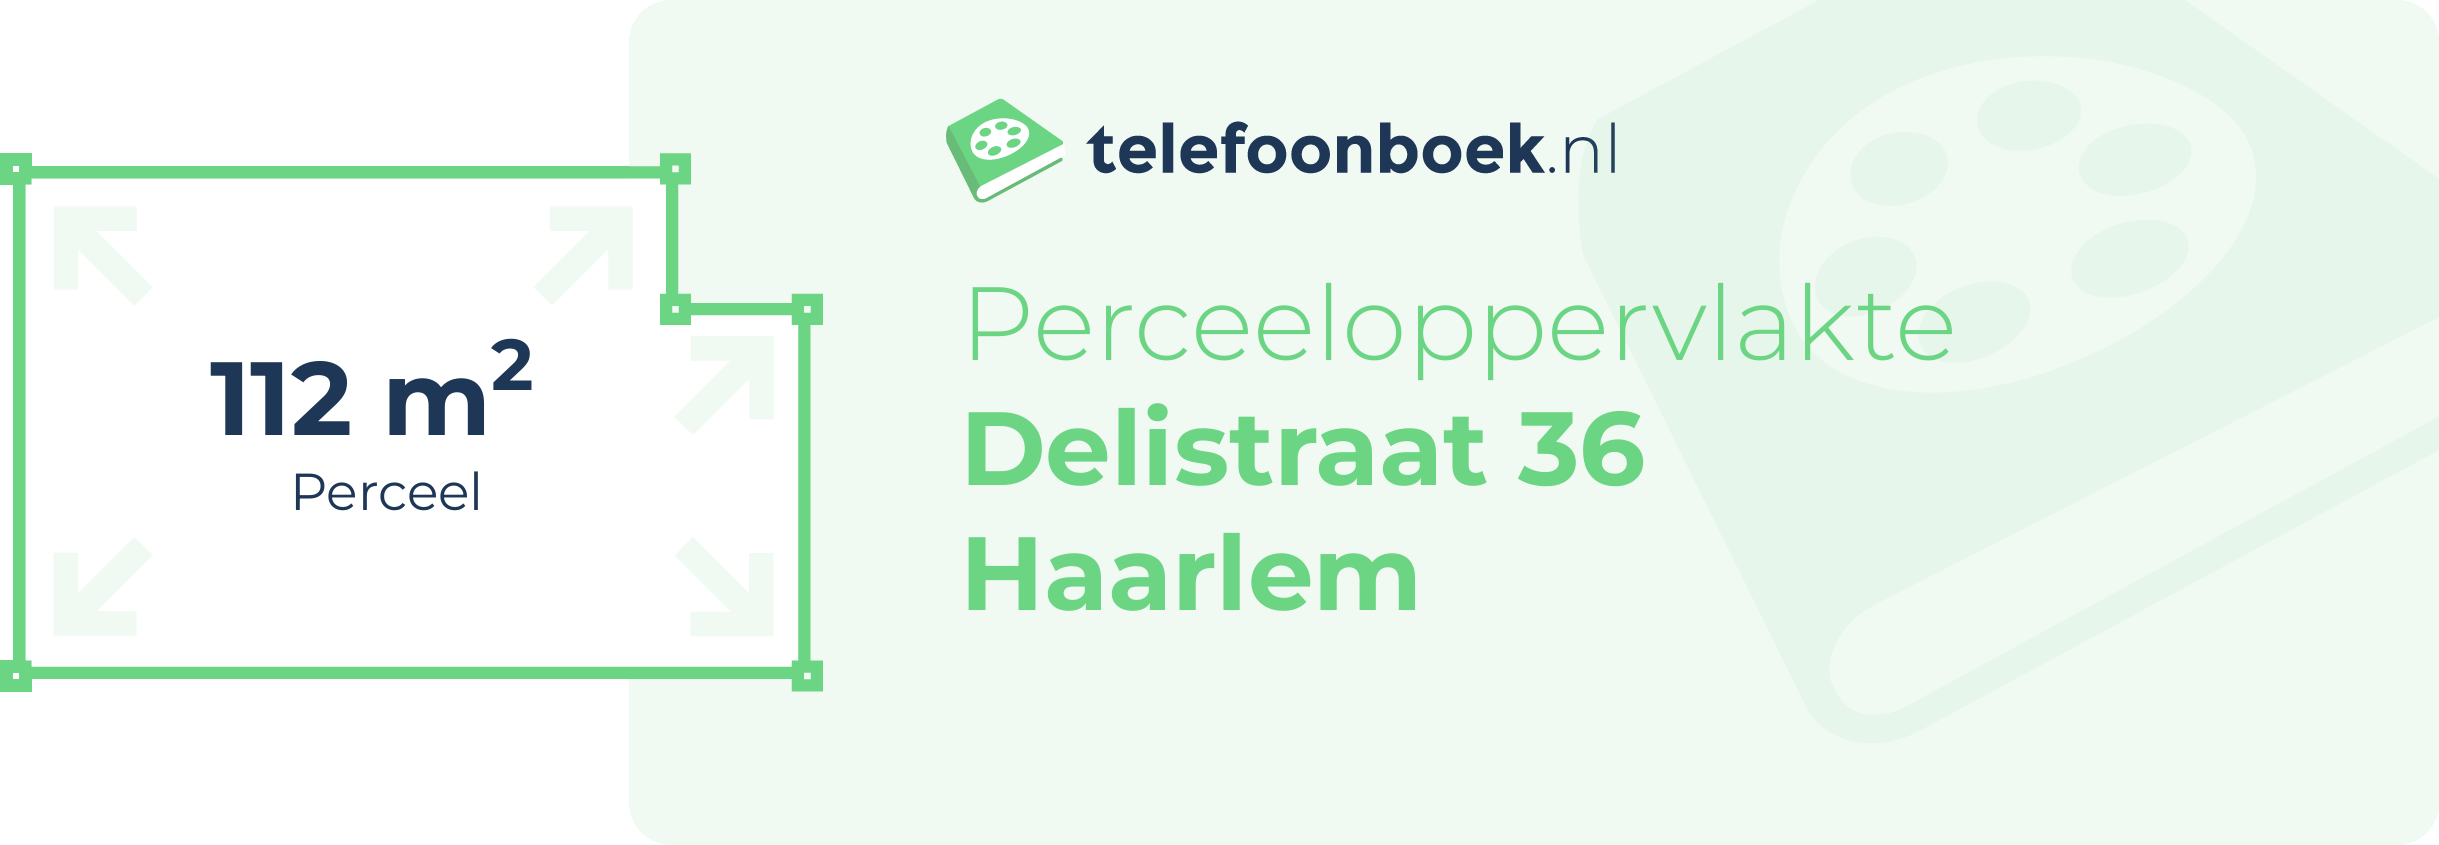 Perceeloppervlakte Delistraat 36 Haarlem